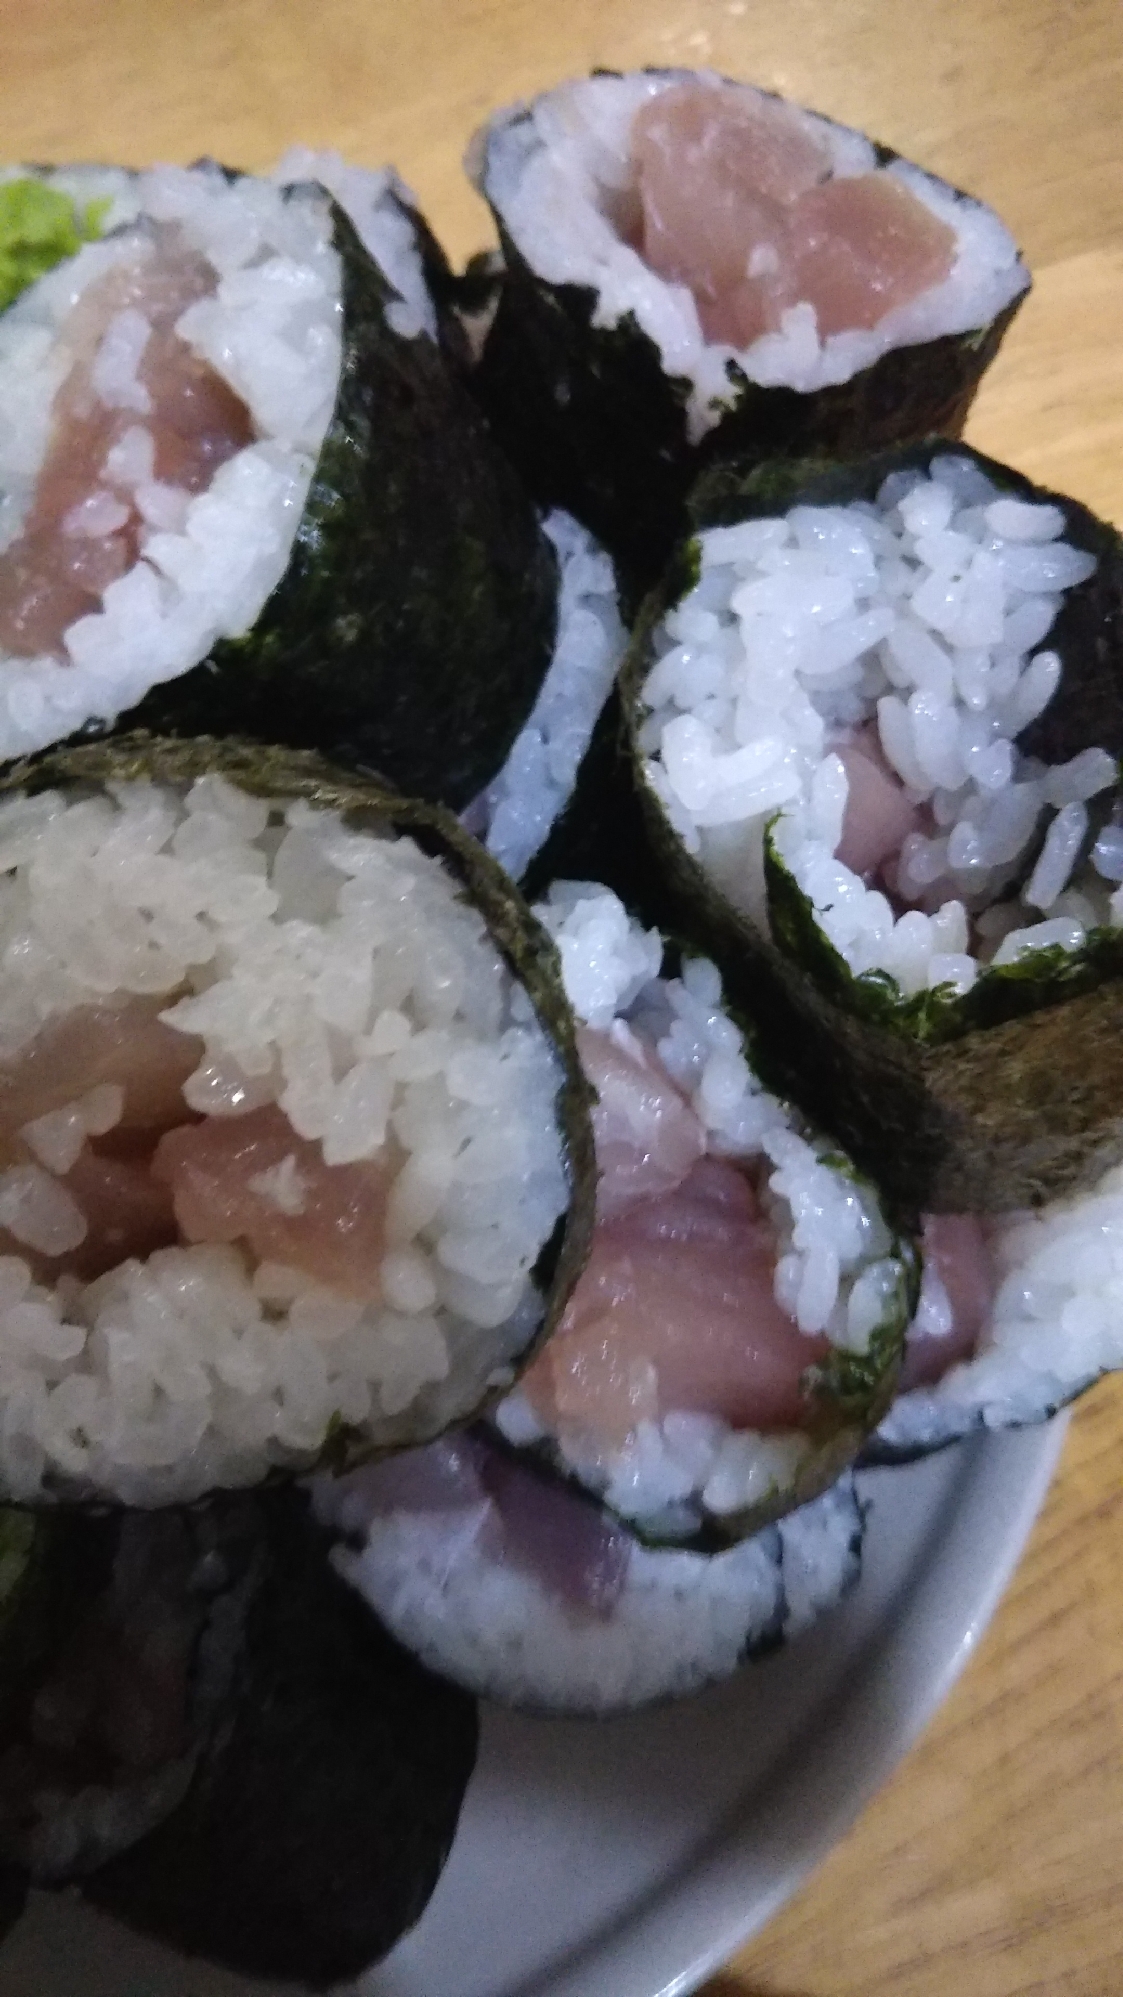 塩ごま油味のまぐろの巻き寿司(о´∀`о)